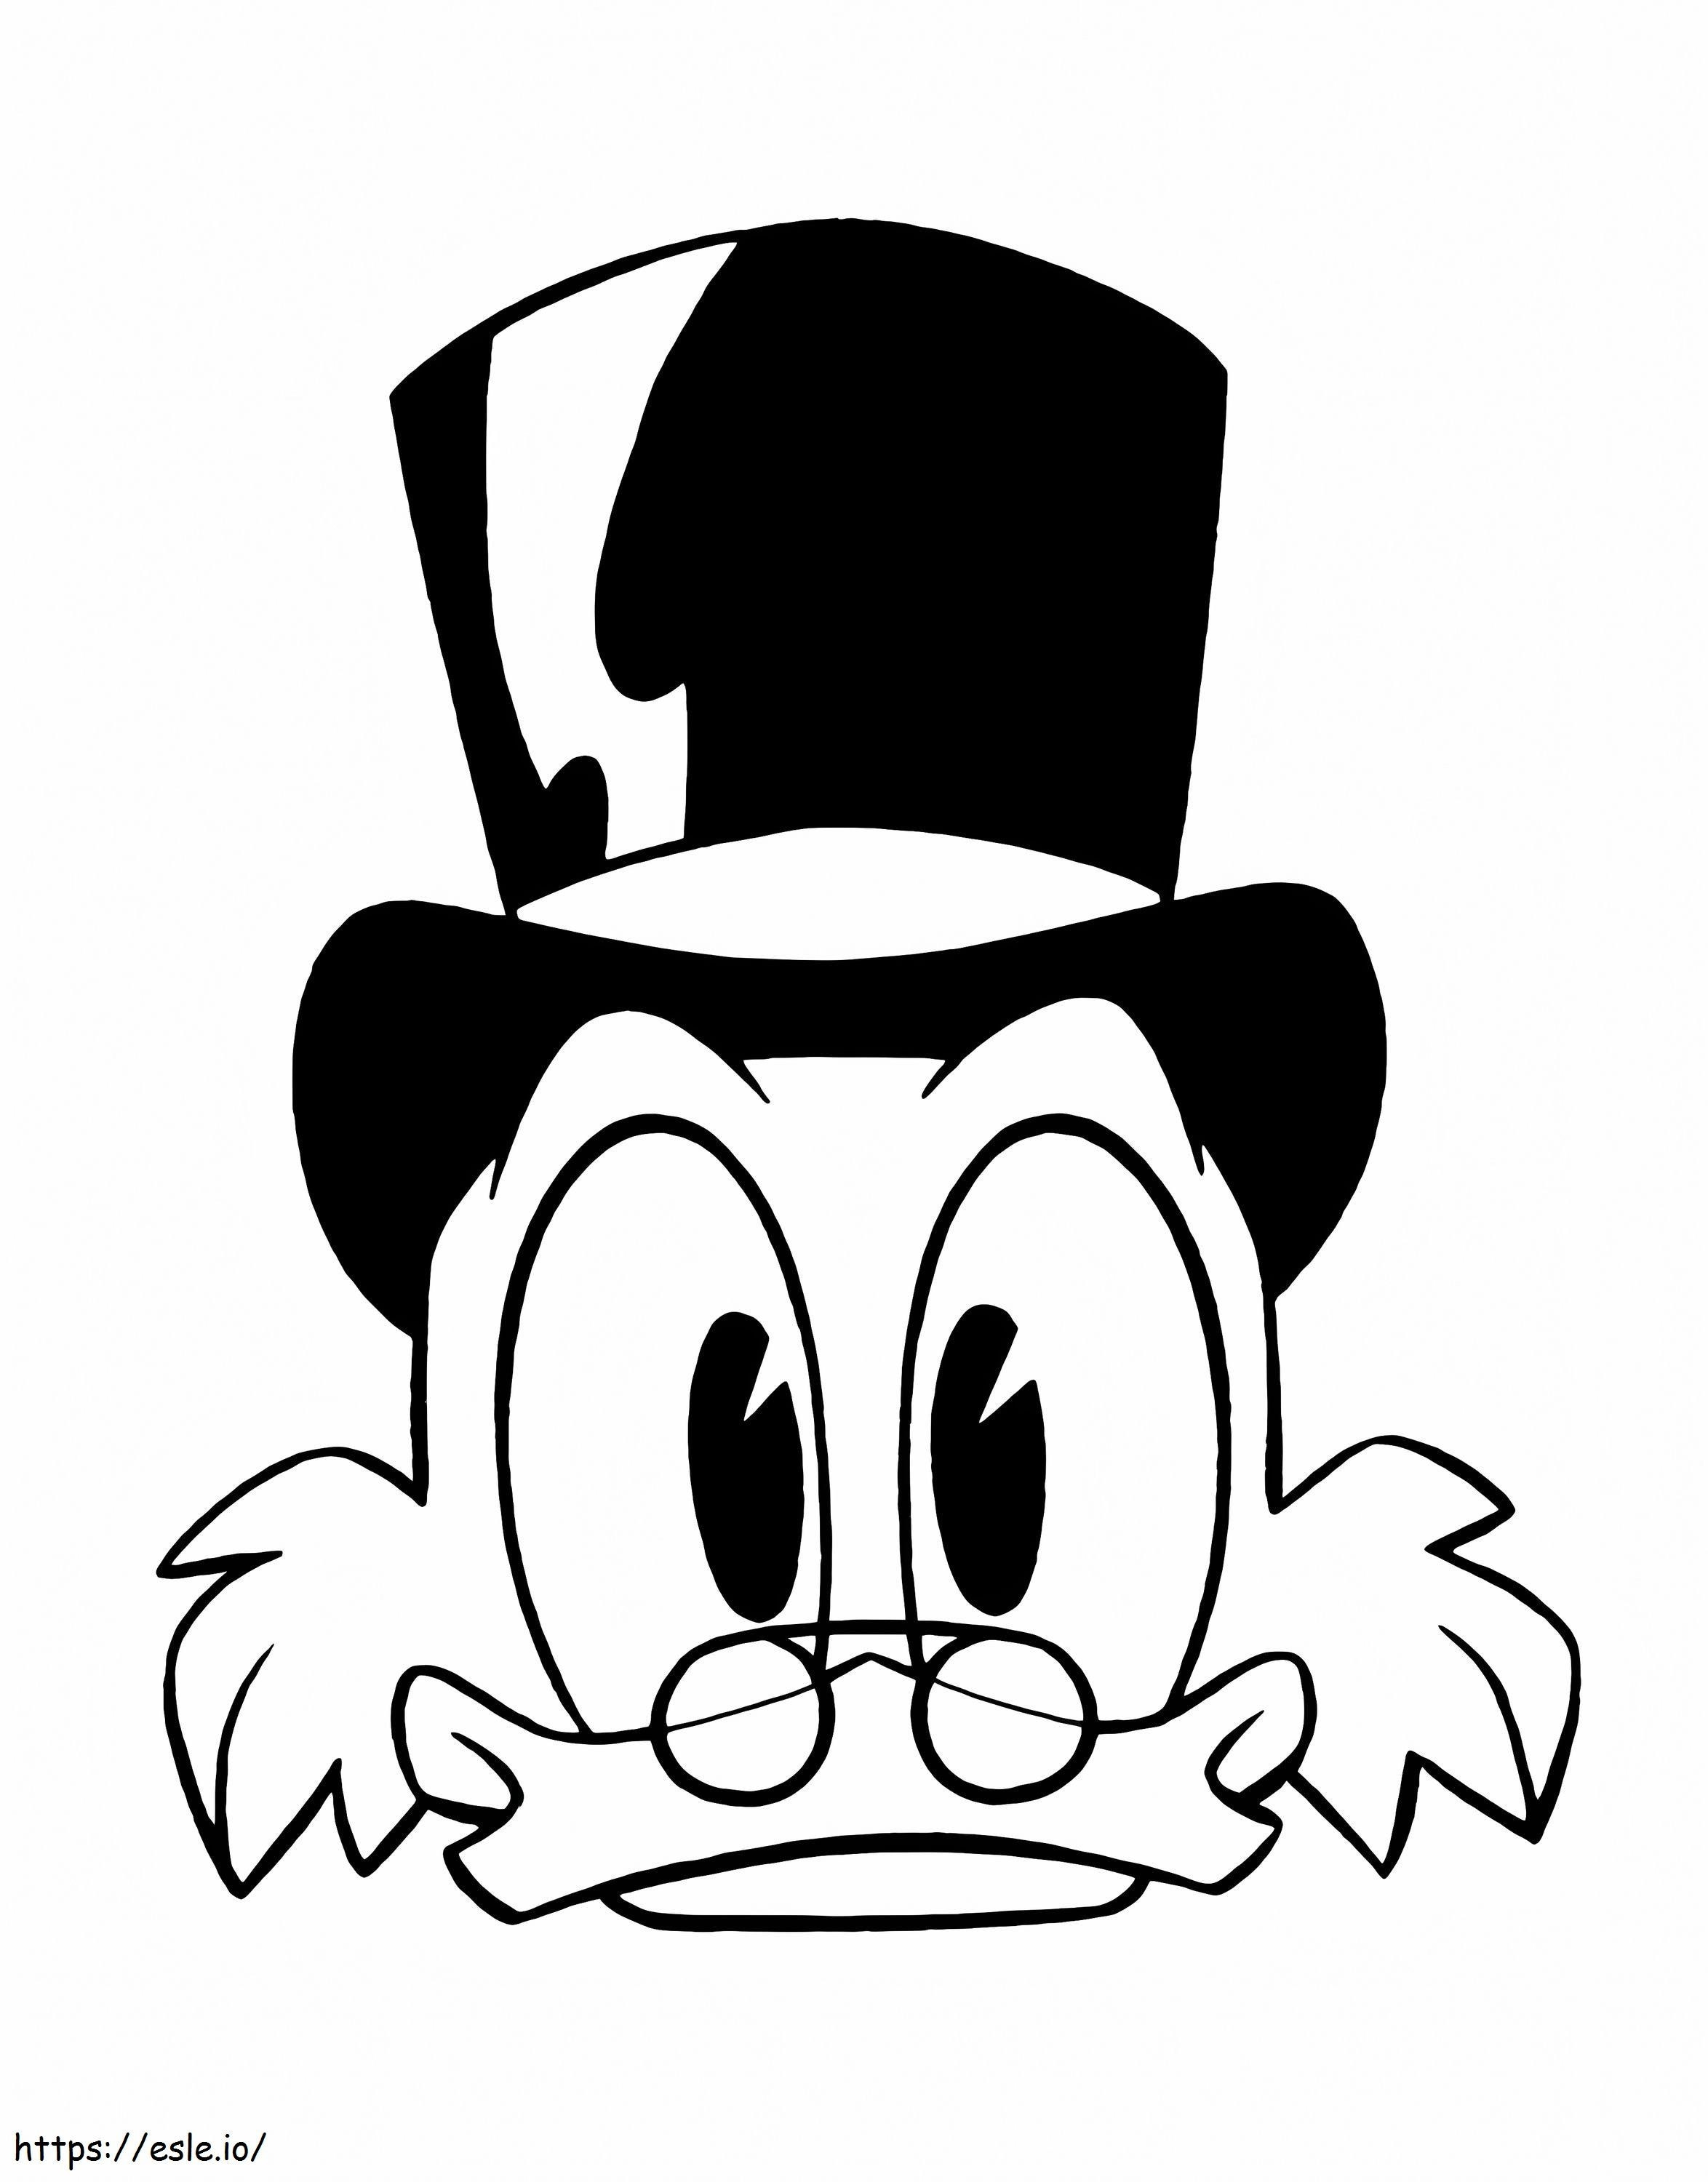 Fața lui Scrooge McDuck de colorat